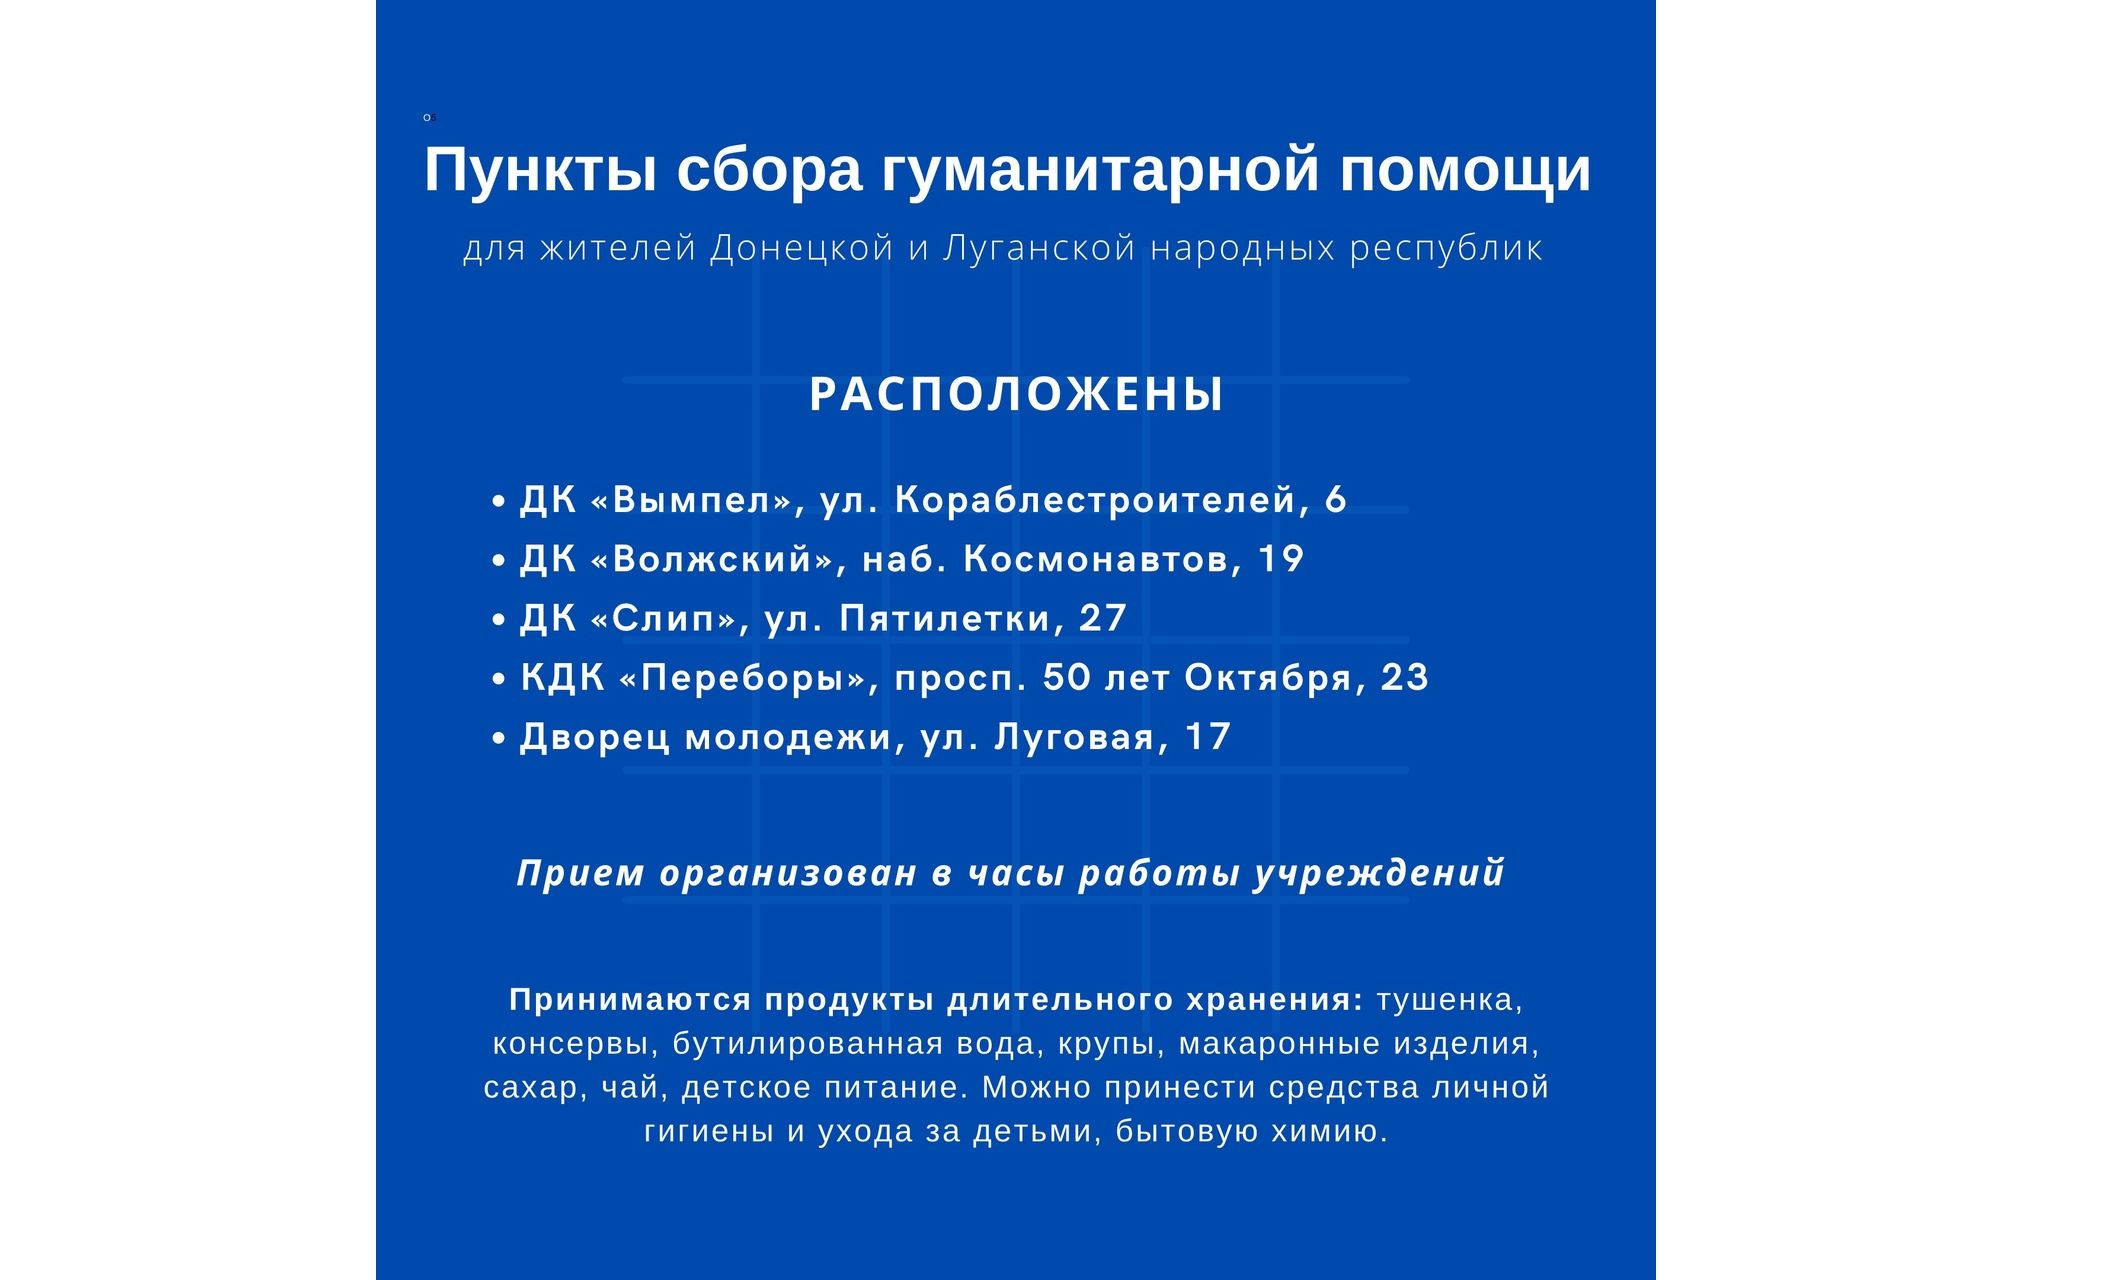 В Рыбинске открыты пять пунктов сбора гуманитарной помощи жителям ЛДНР